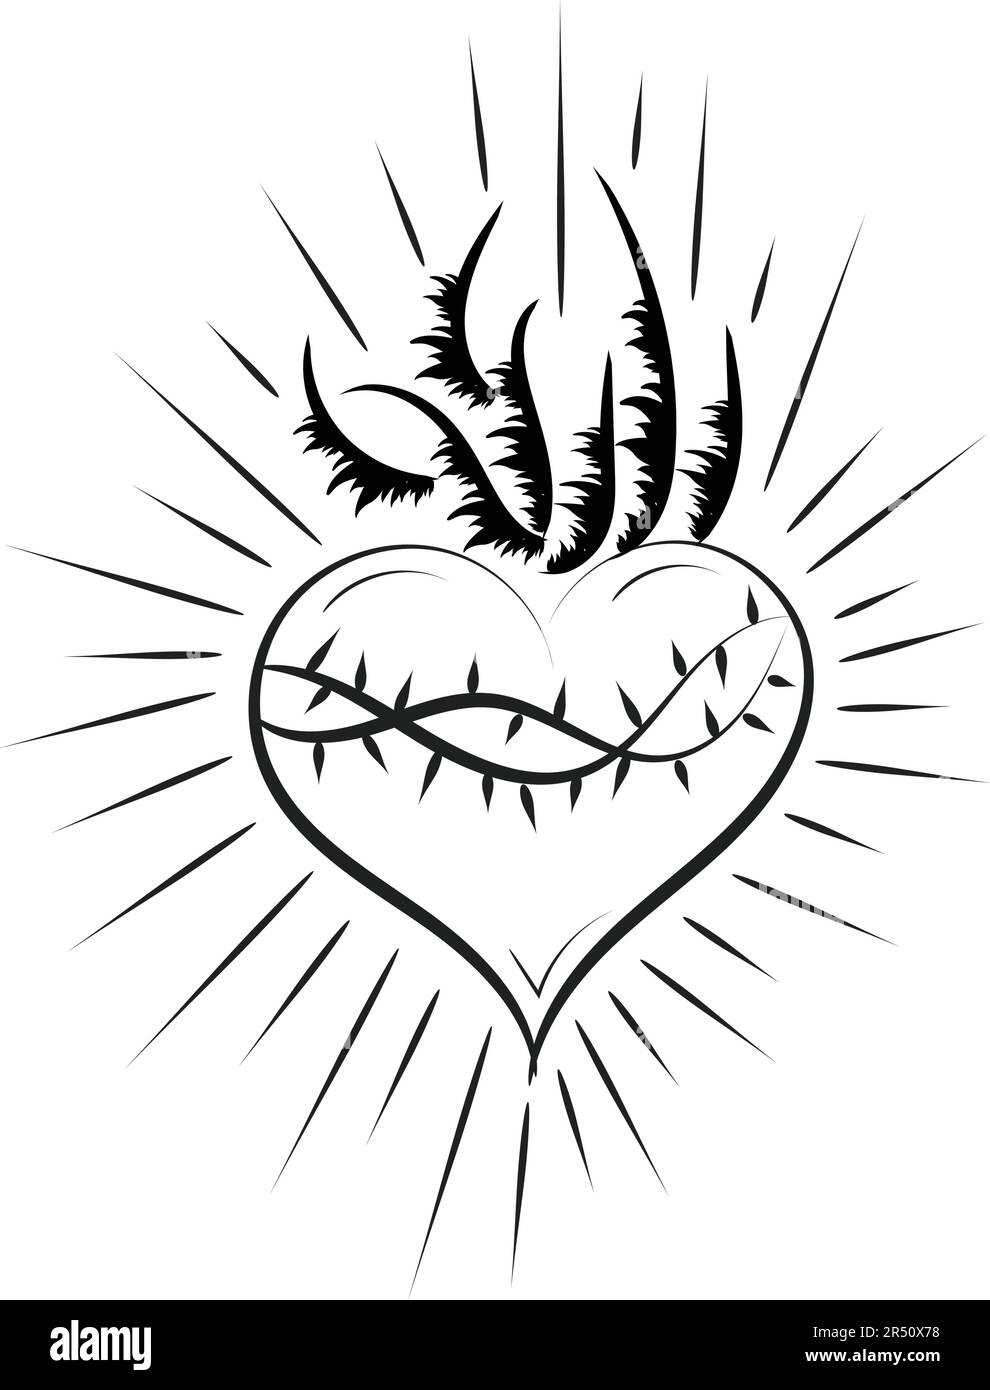 Cœur sacré de Jésus avec rayons vecteur Illustration pour l'impression ou l'utilisation comme poster, prospectus, carte, tatouage ou T-shirt Illustration de Vecteur